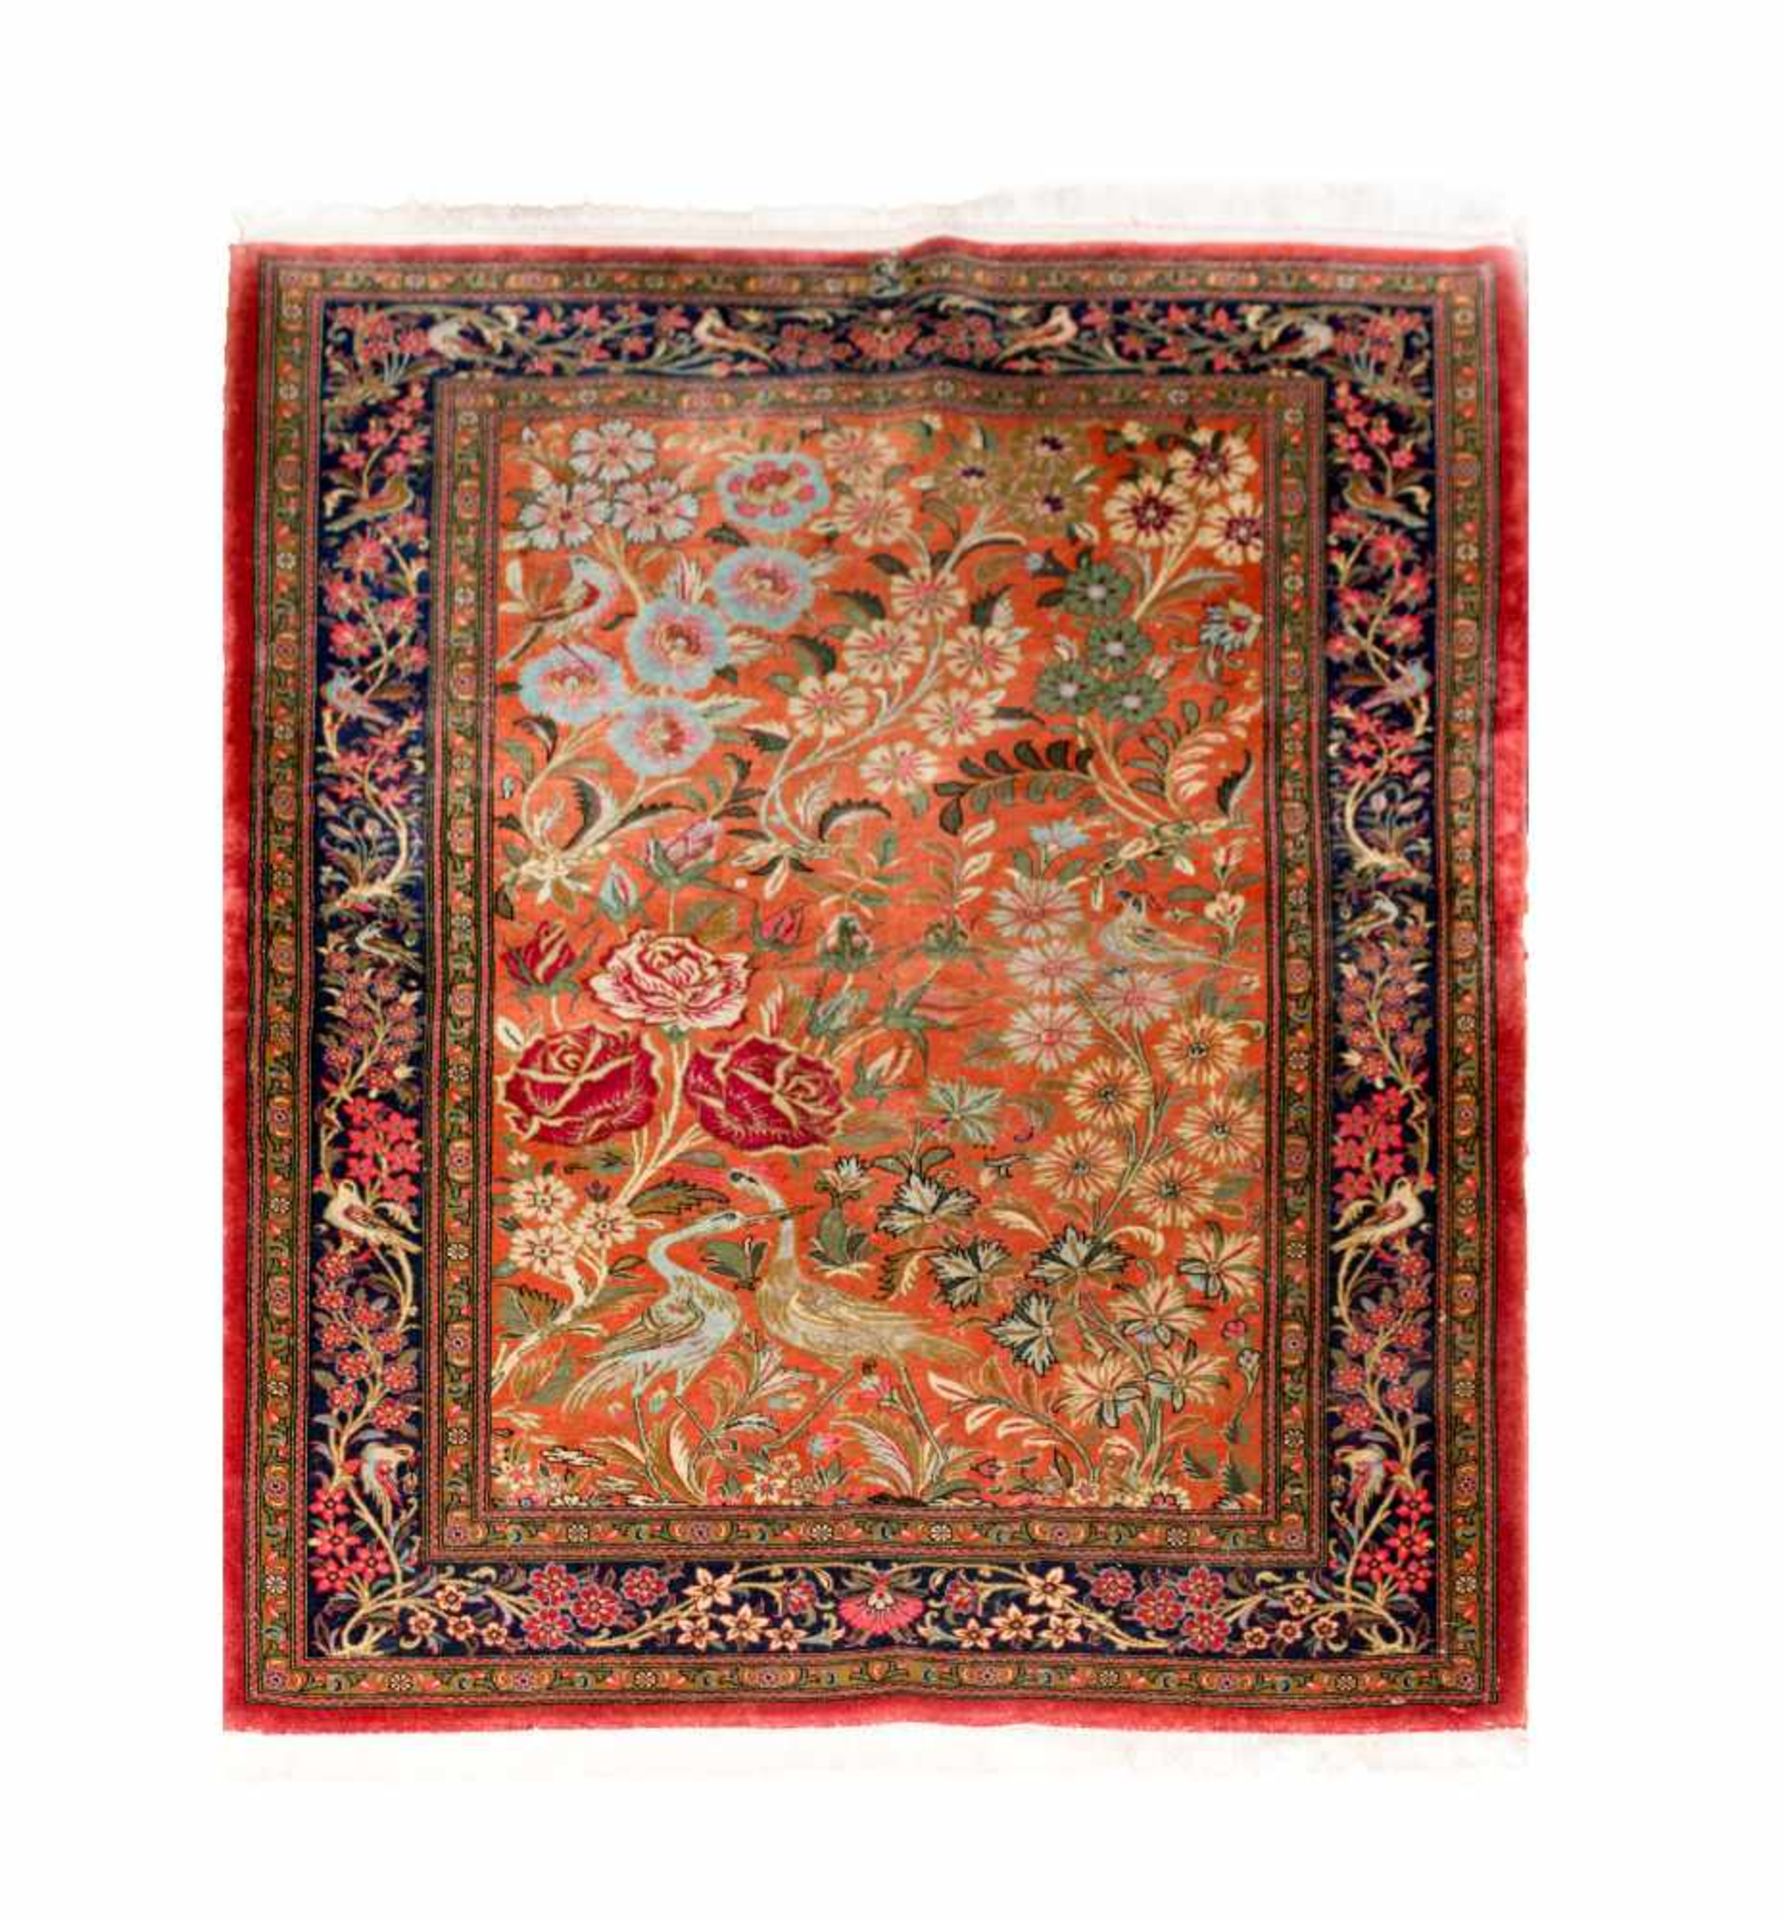 Indischer TeppichWolle und Seide auf Wolle, 146 cm x 107 cm, Ränder leicht beschädigtDieses Los wird